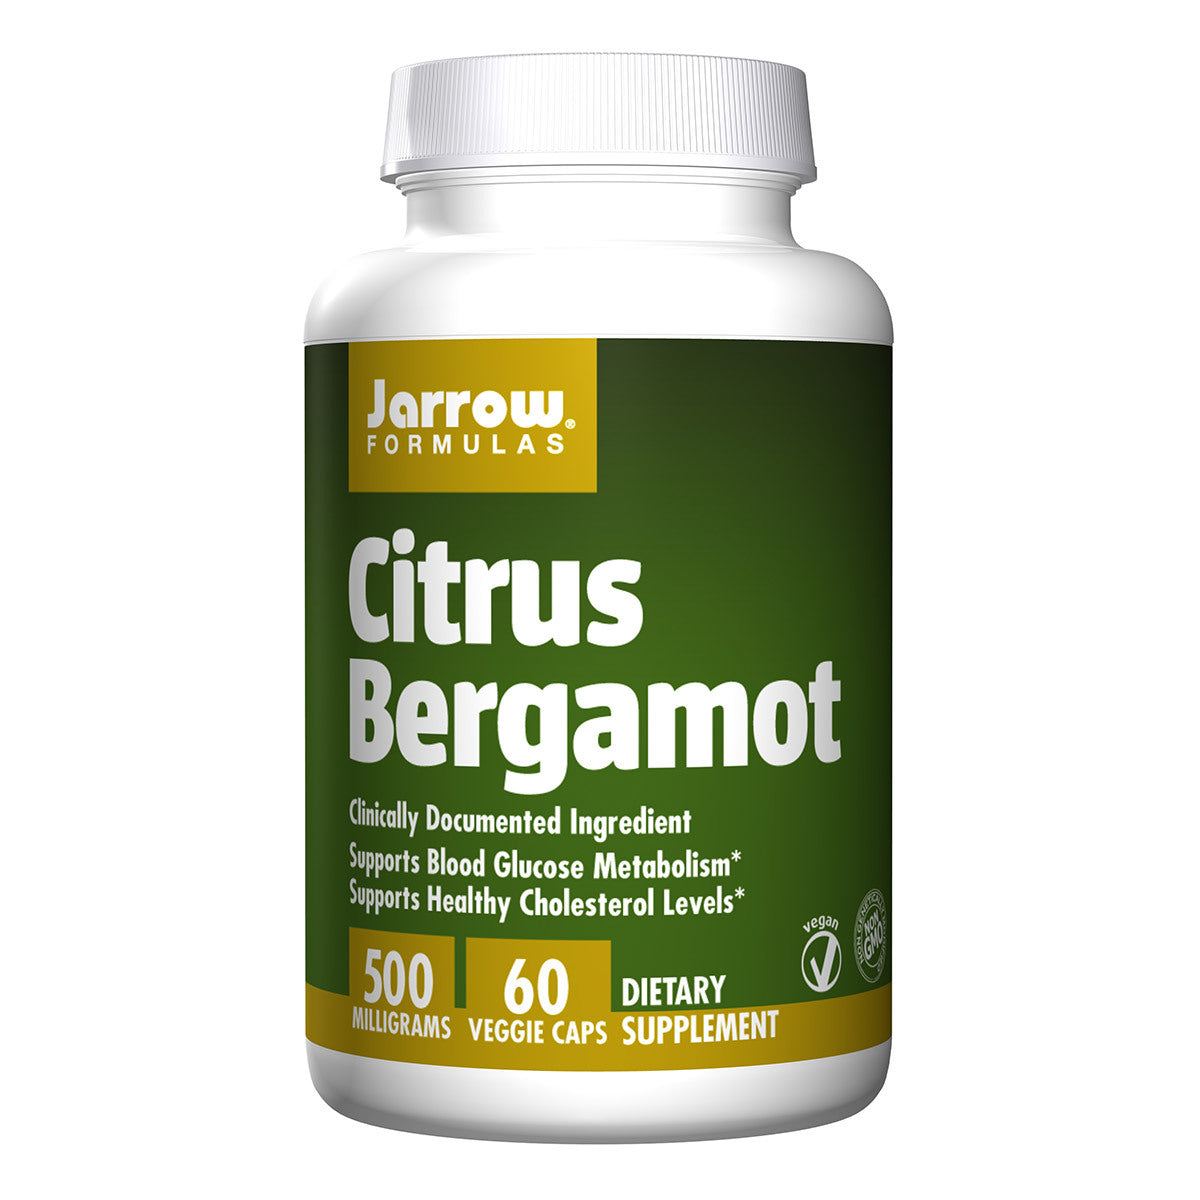 Primary image of Citrus Bergamot